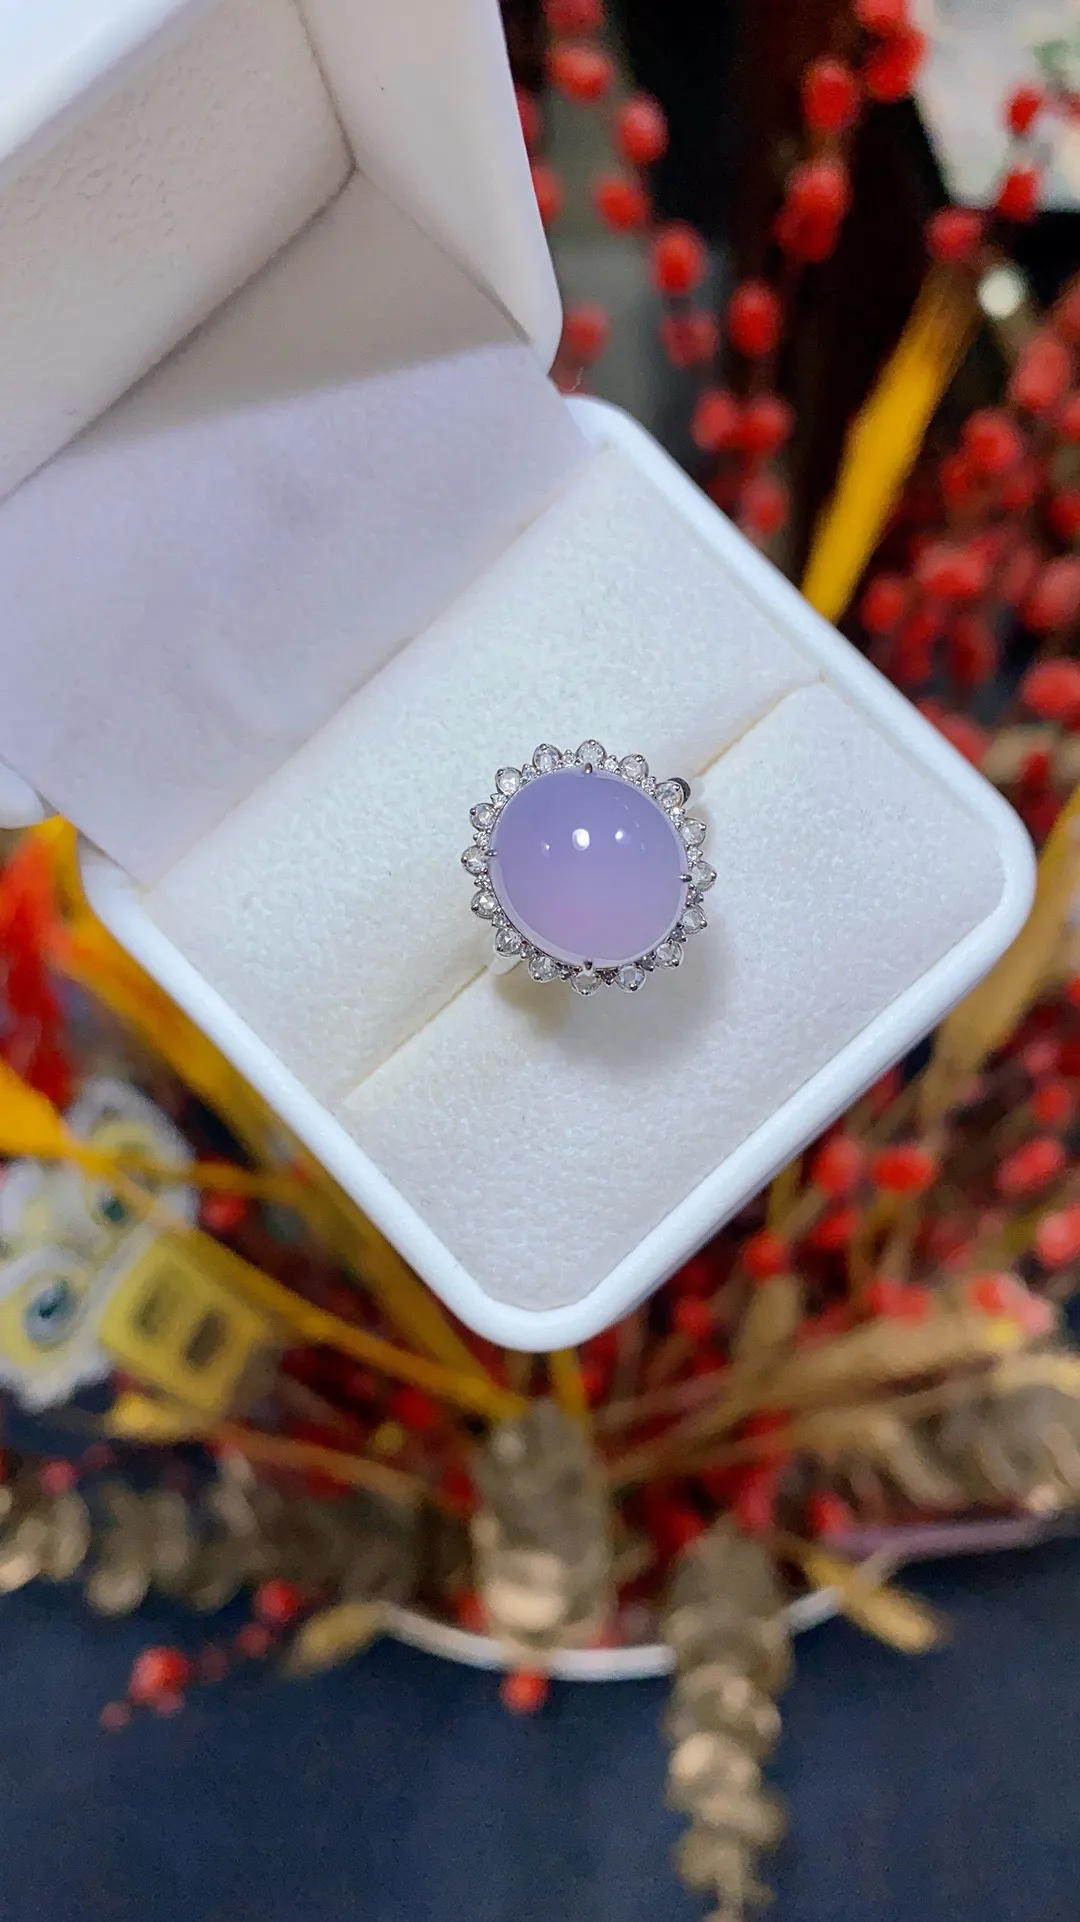 冰粉紫蛋面戒指 · 轻奢风品质美物
18K · 整：16.3*15.3*11.7mm
       